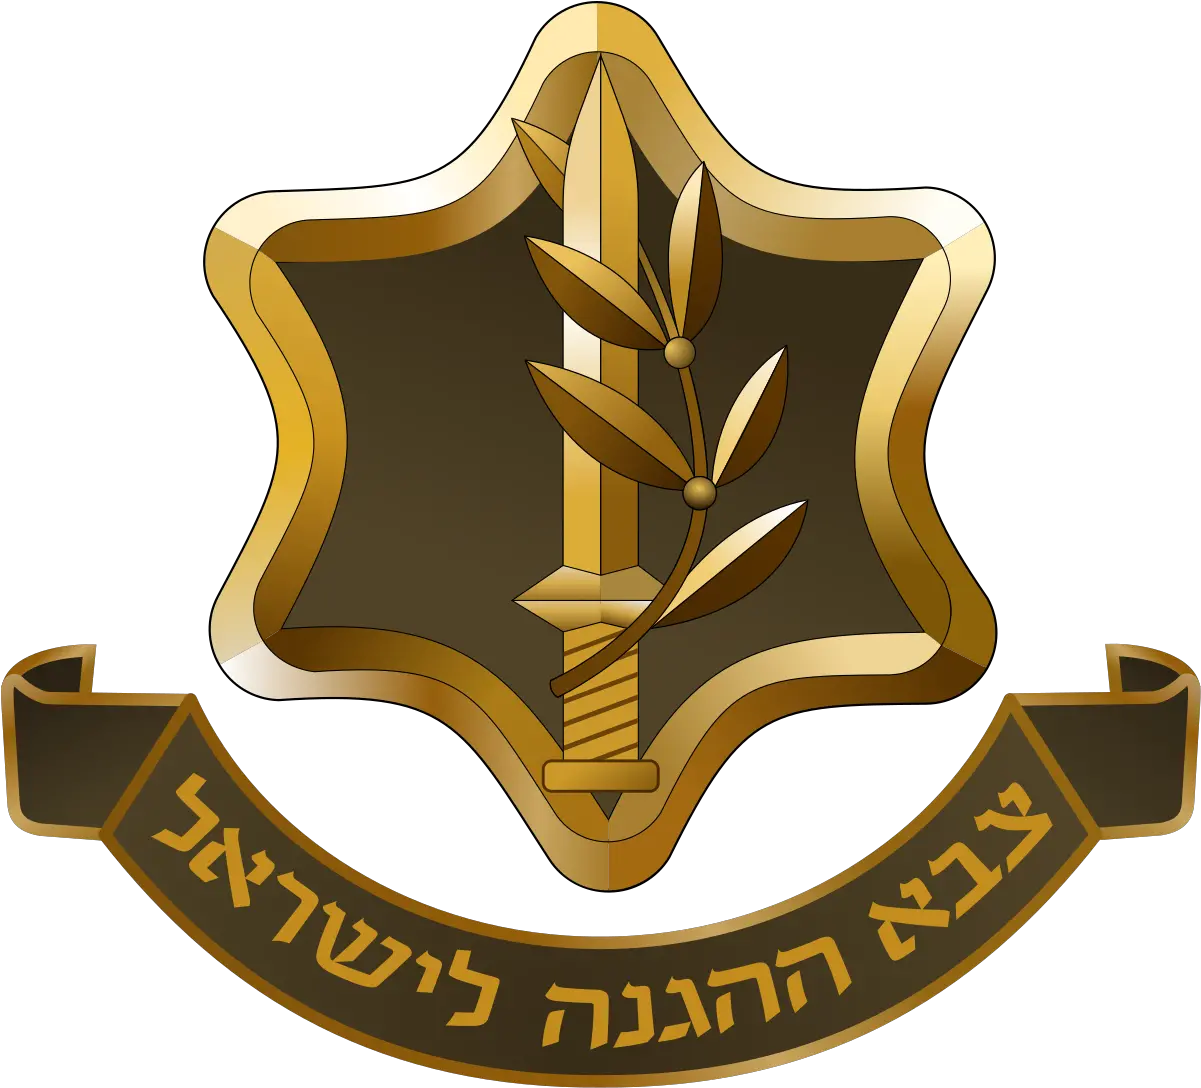 Israel Defense Forces Emblem Wikipedia Forças De Defesa De Israel Png Military Star Icon